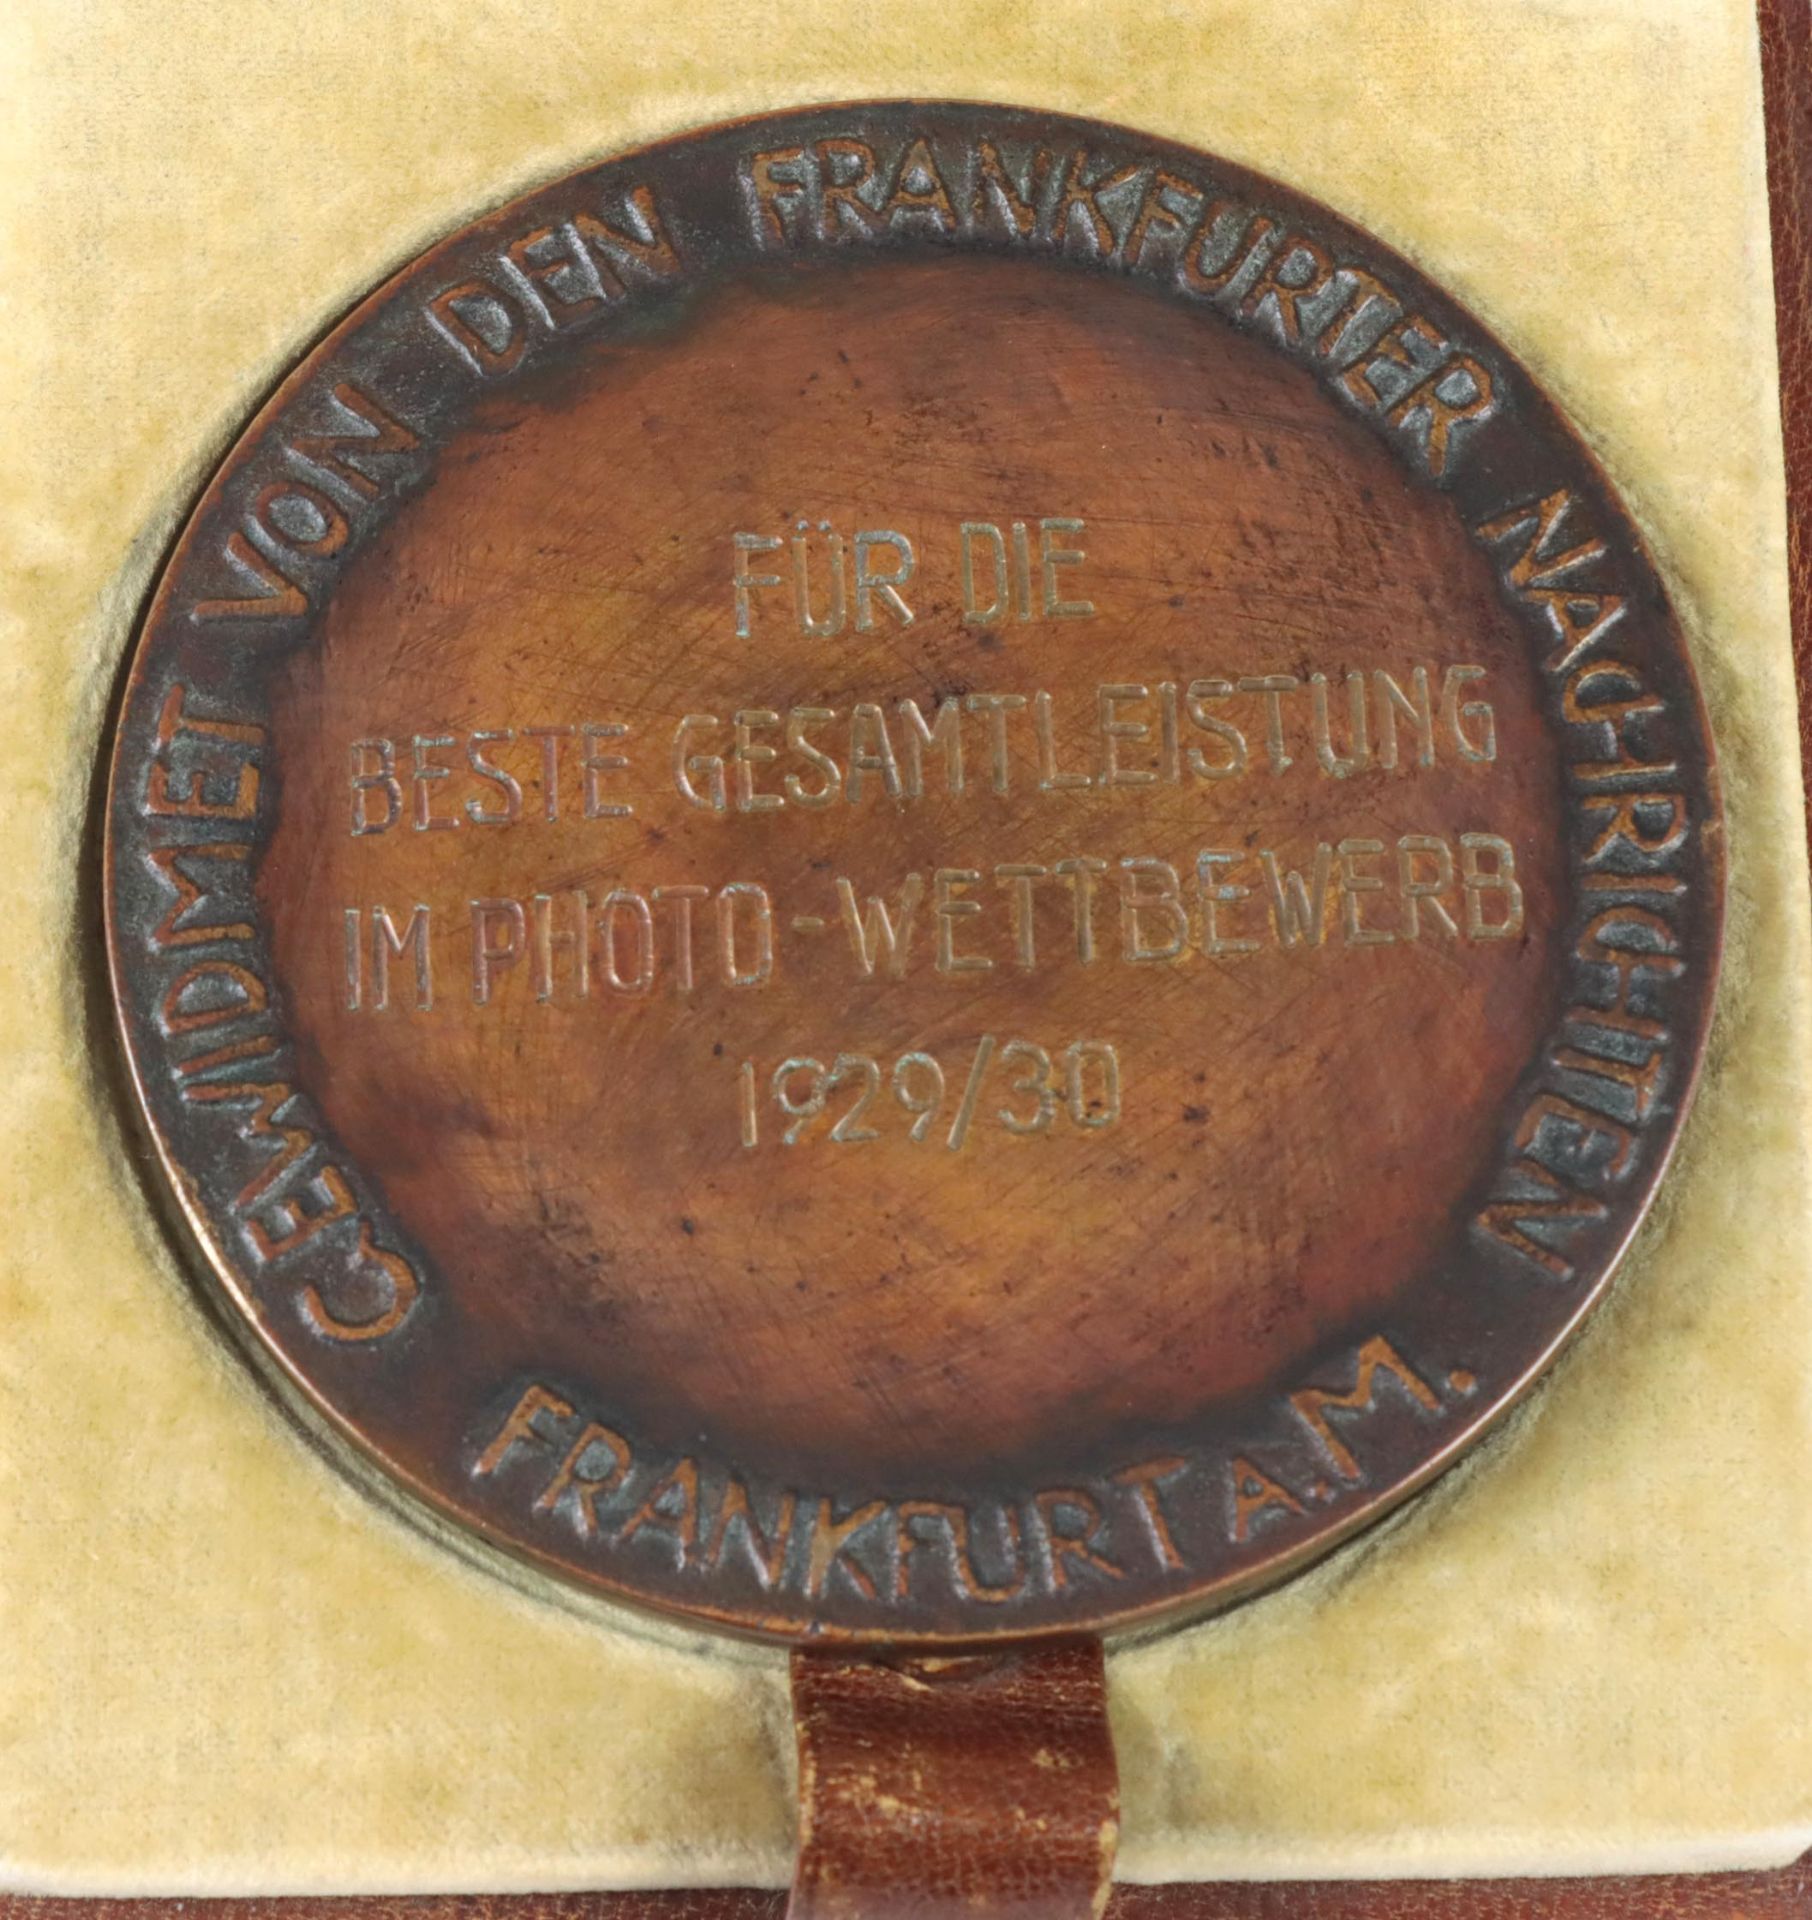 Bronze Medaille Photo Wettbewerb 1929/30 - Bild 2 aus 4